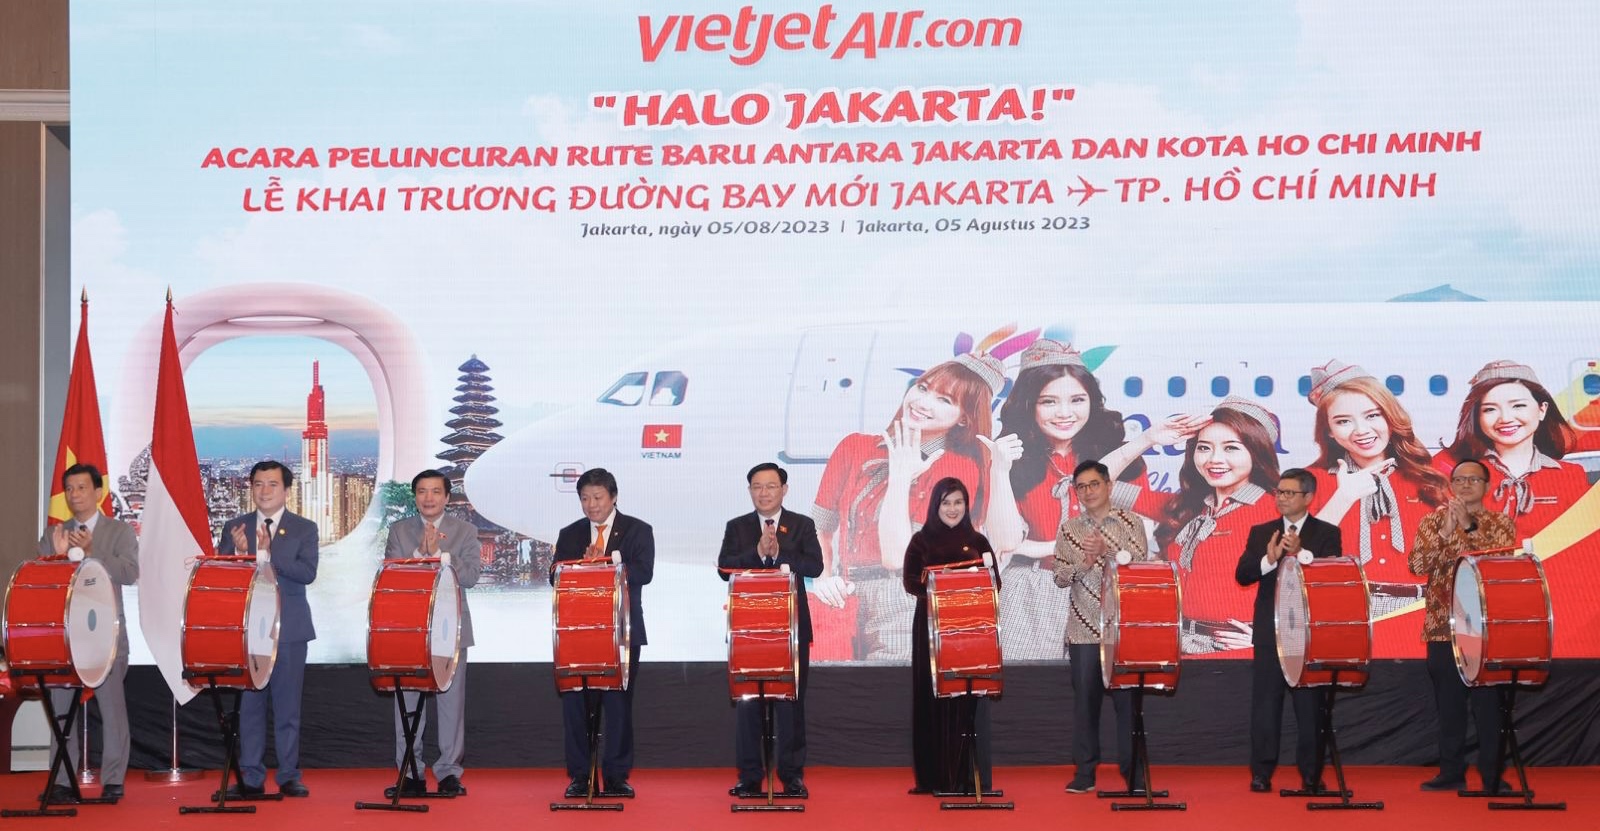 Chủ tịch Quốc hội Vương Đình Huệ (giữa) cùng đại diện lãnh đạo cấp cao của Việt Nam, Indonesia và Vietjet thực hiện nghi thức khai trương đường bay thẳng giữa TP. Hồ Chí Minh và Jakarta